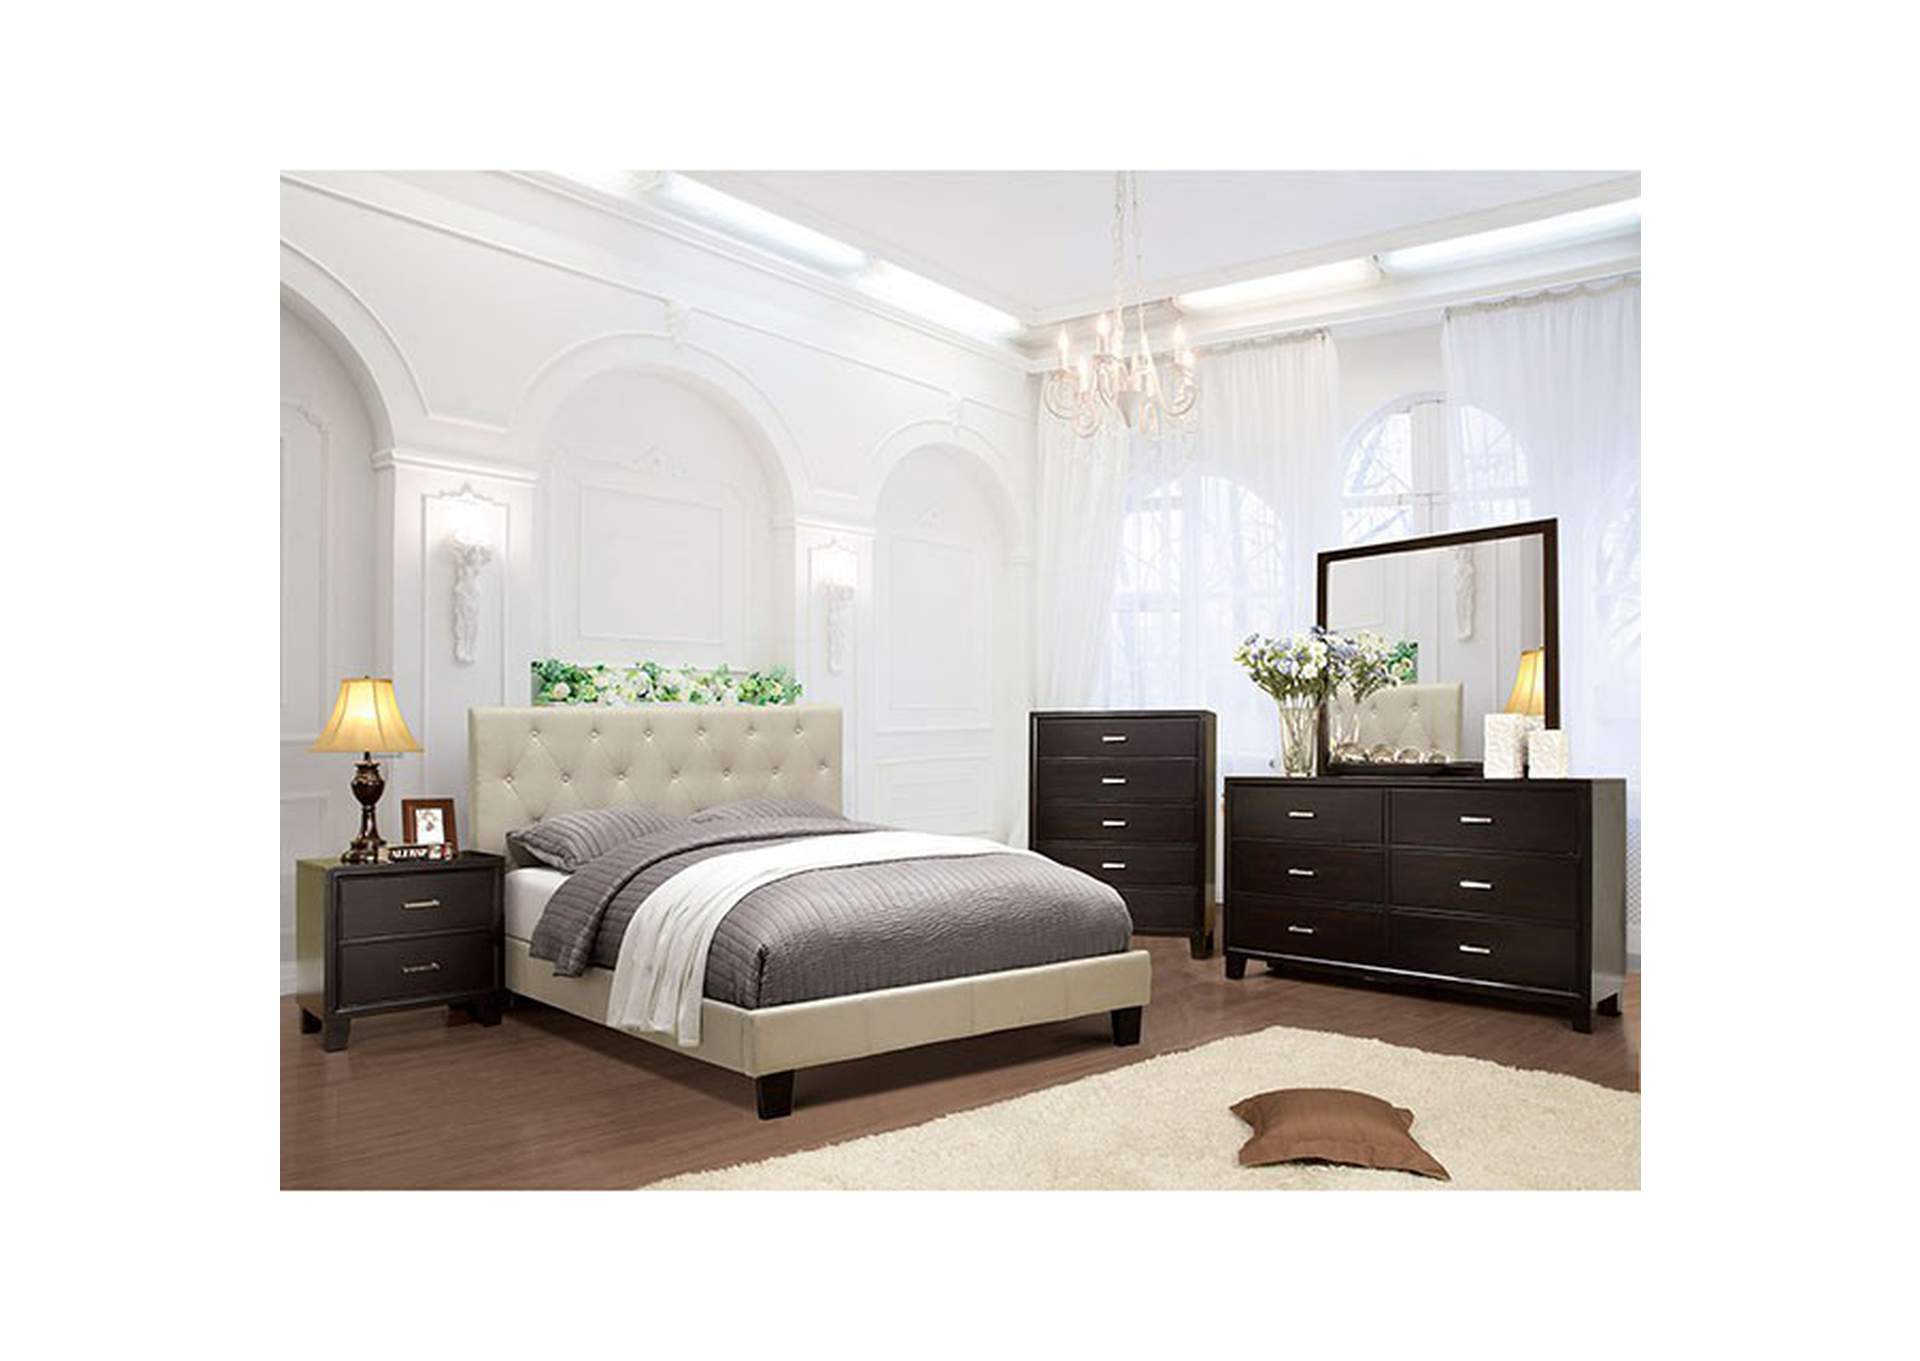 Leeroy Full Bed,Furniture of America